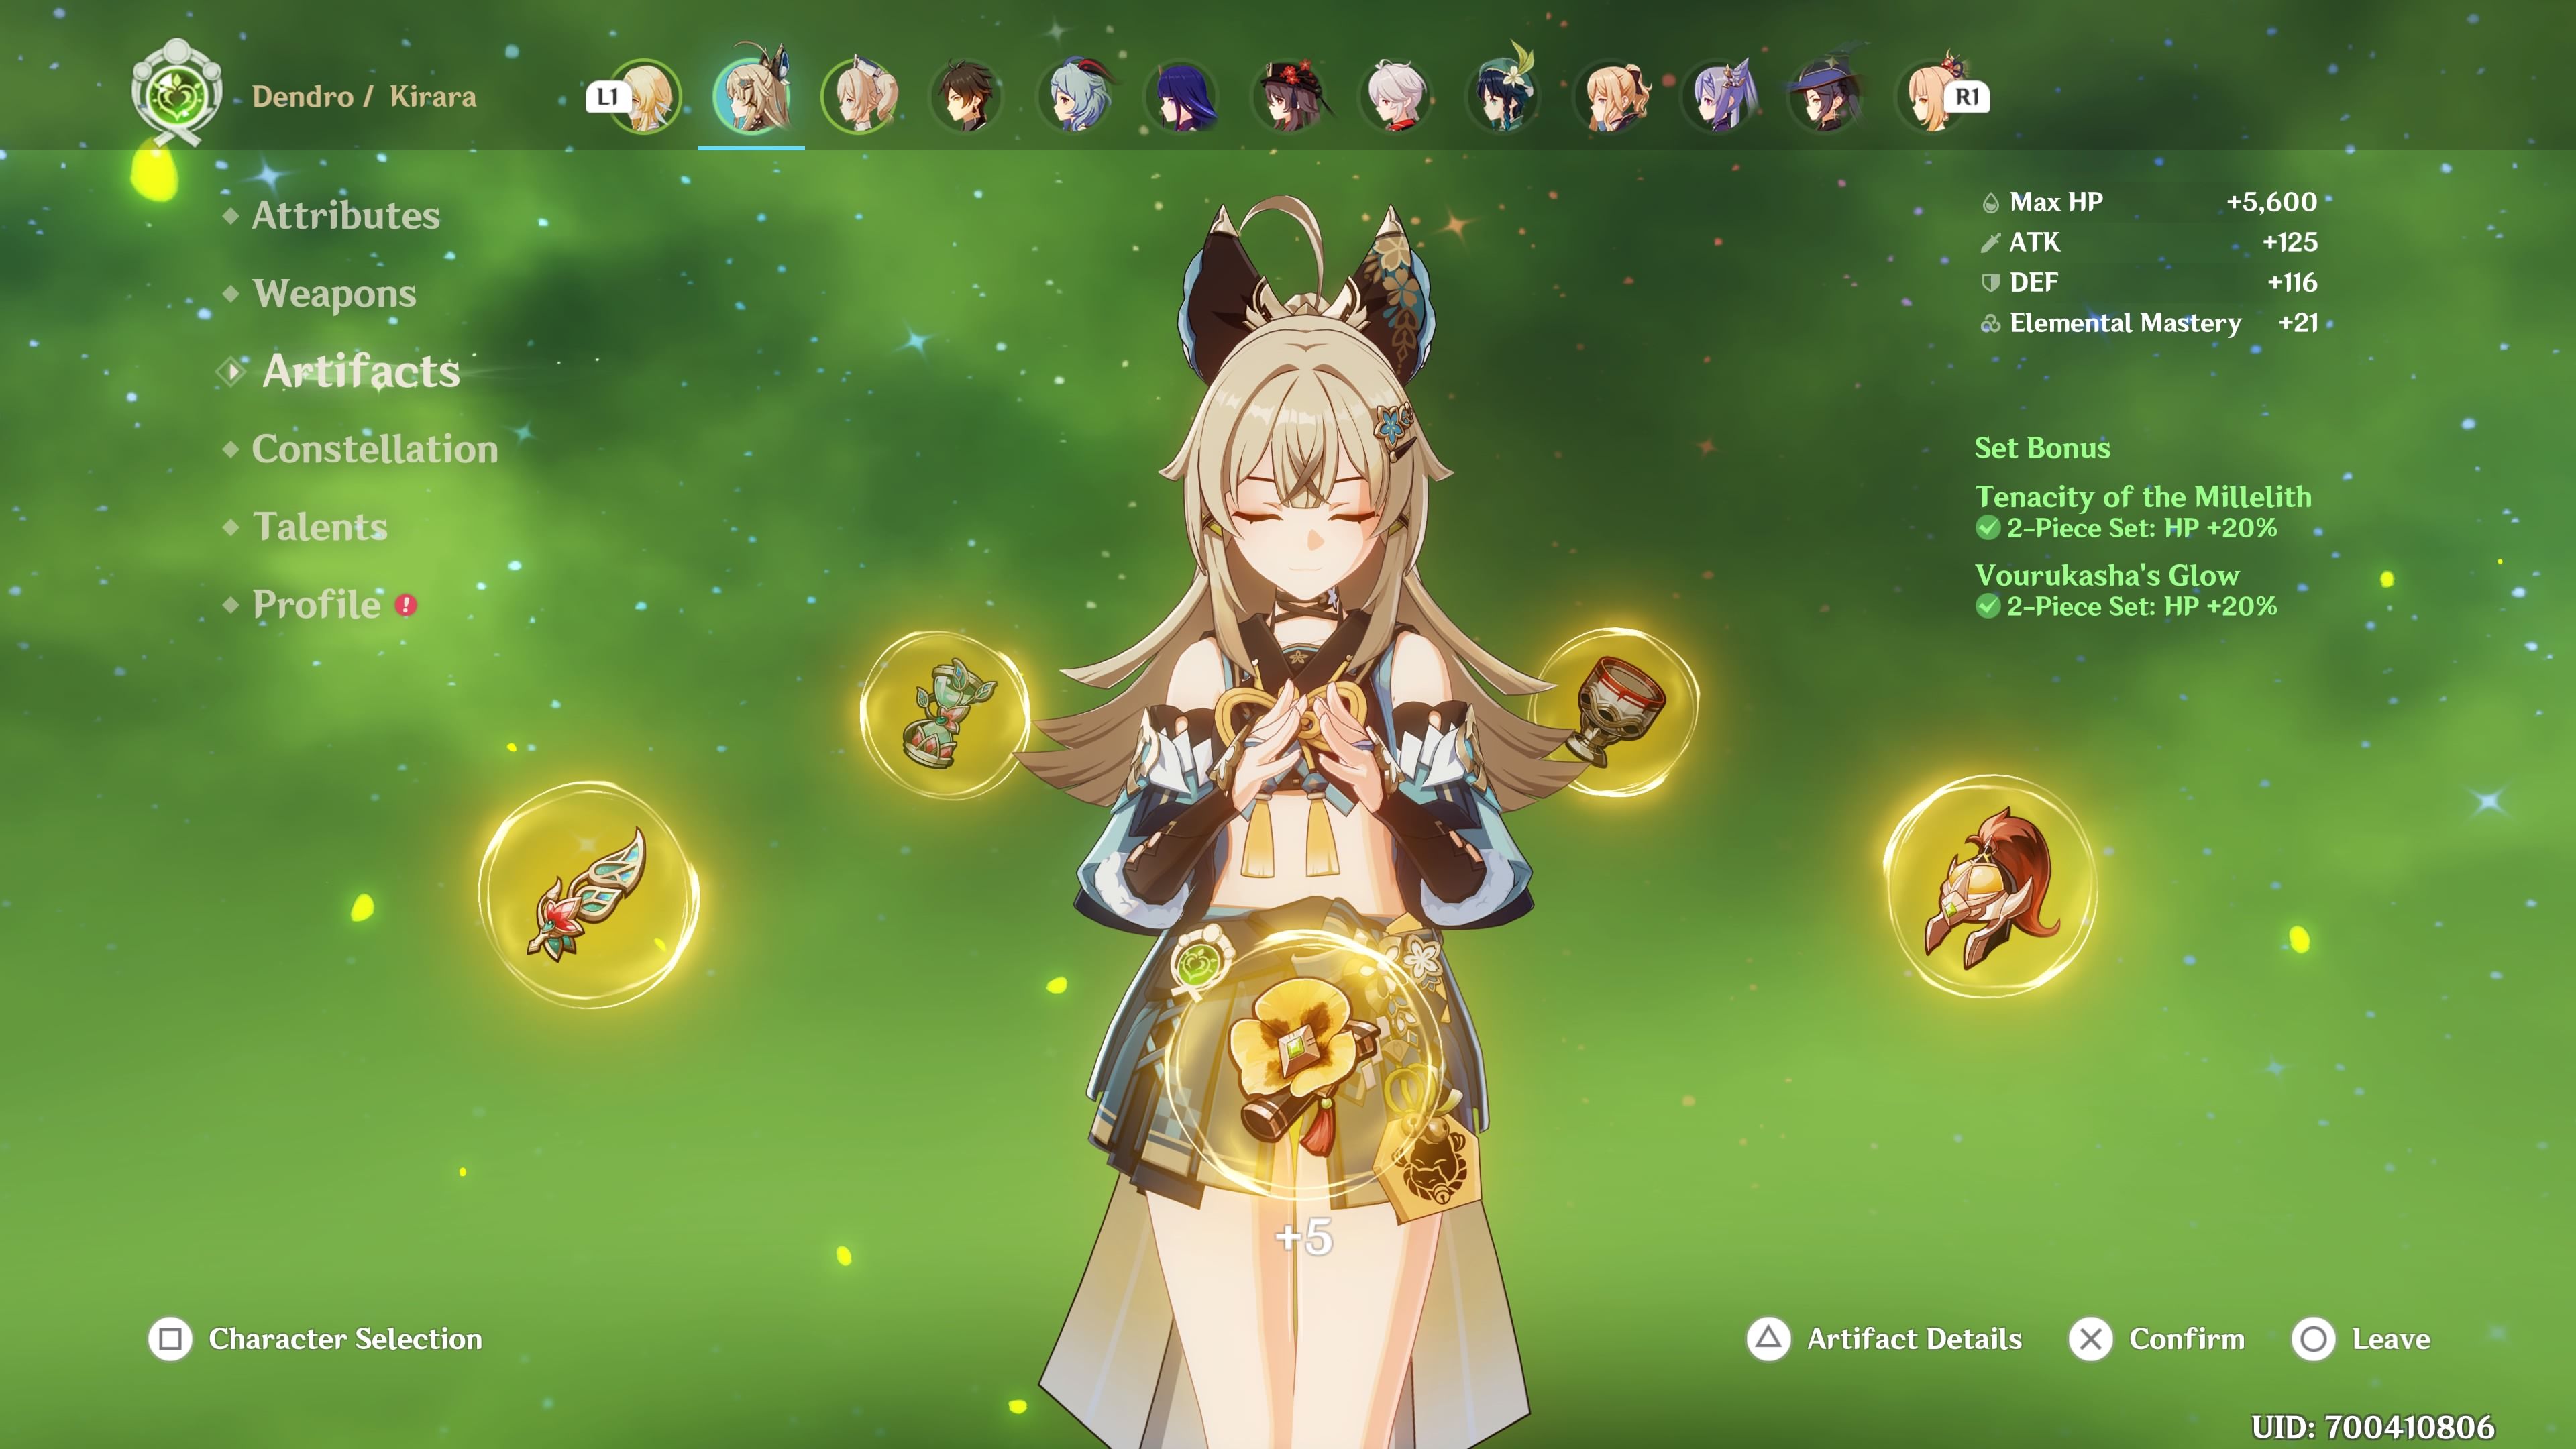 Genshin Impact: Kirara showing her Artifacts in the character menu